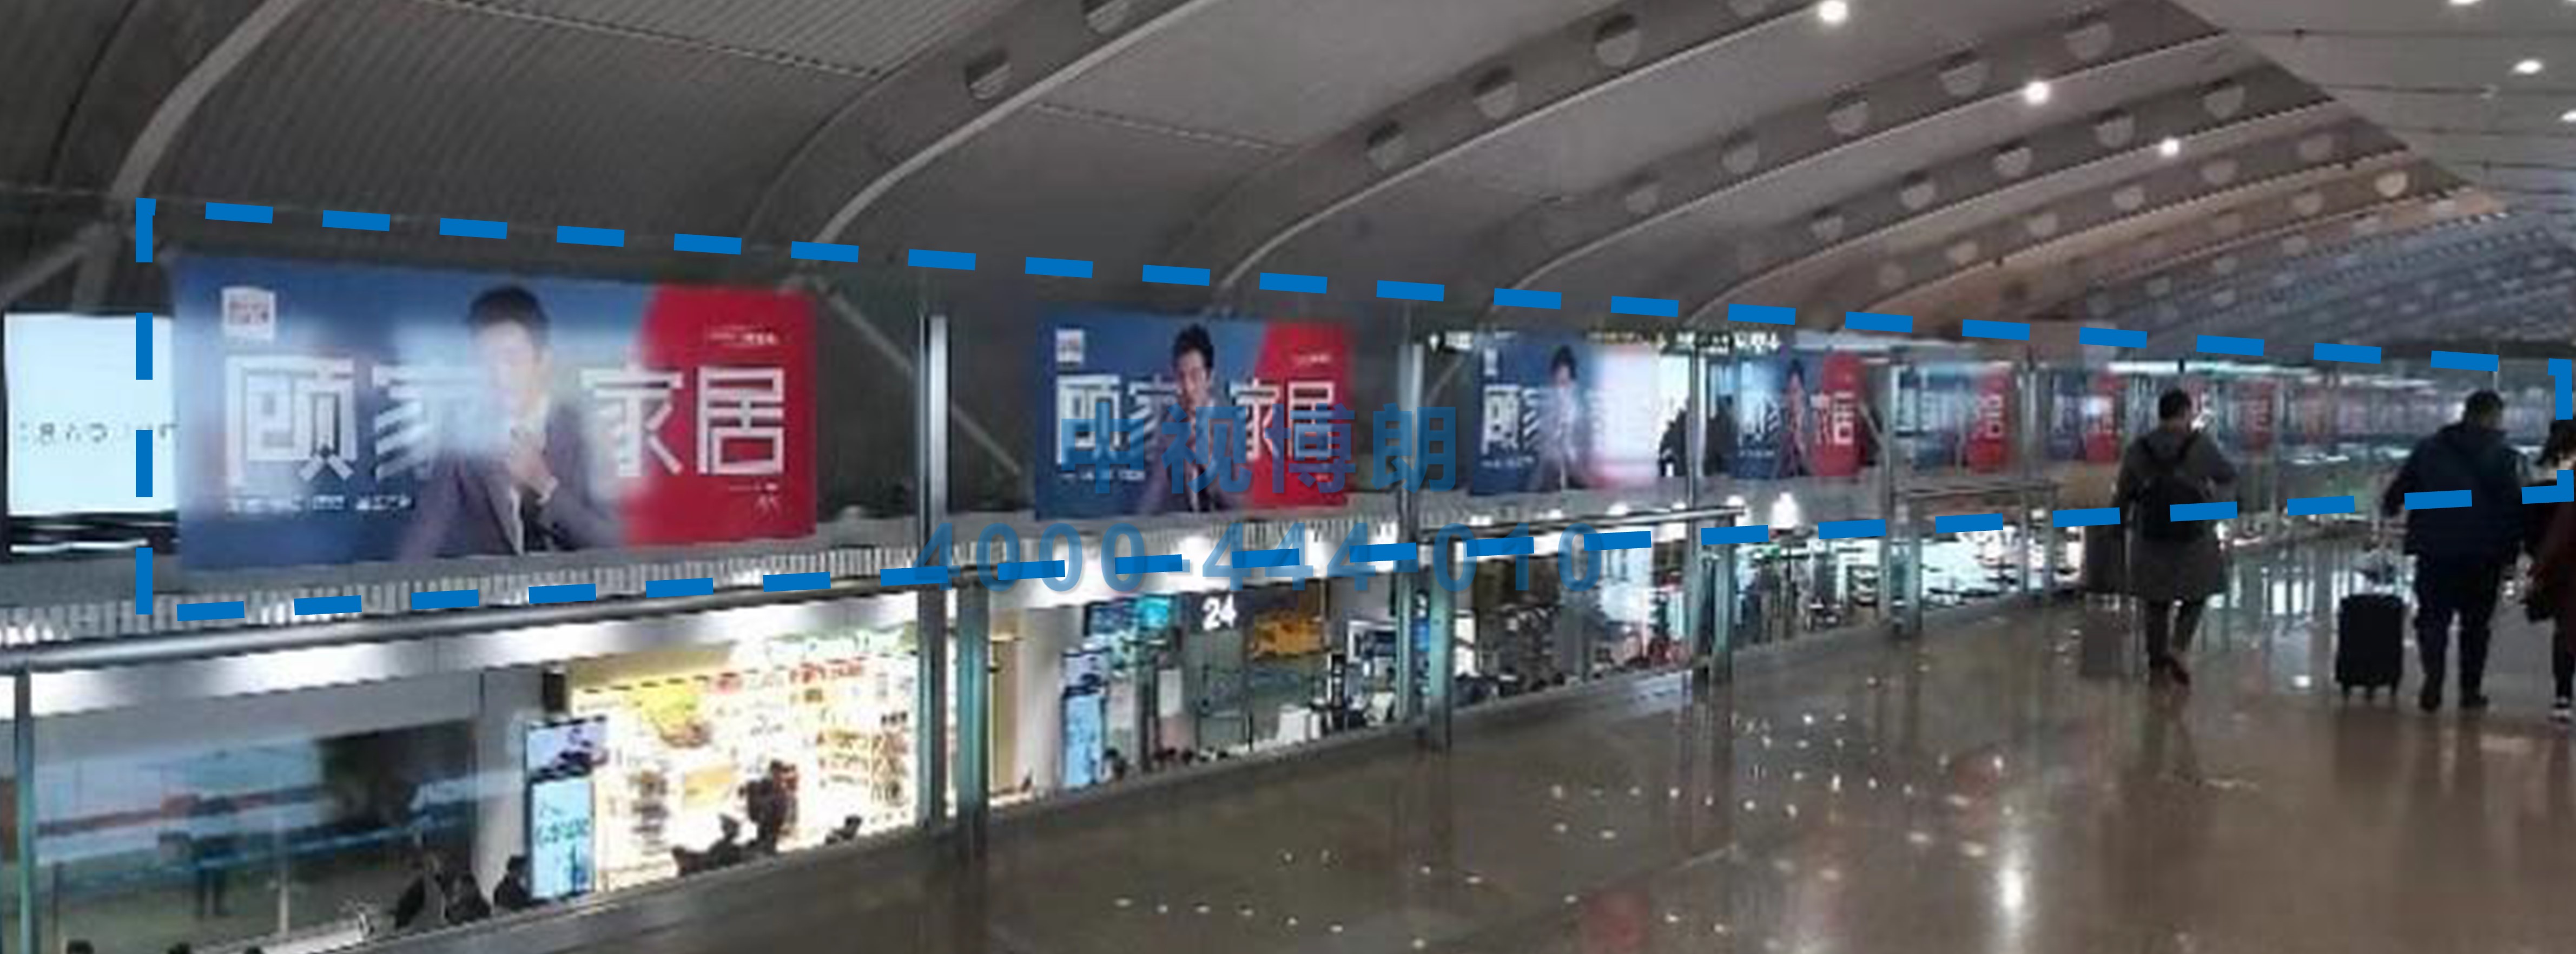 北京首都机场广告-T2到达走廊联排玻璃贴膜